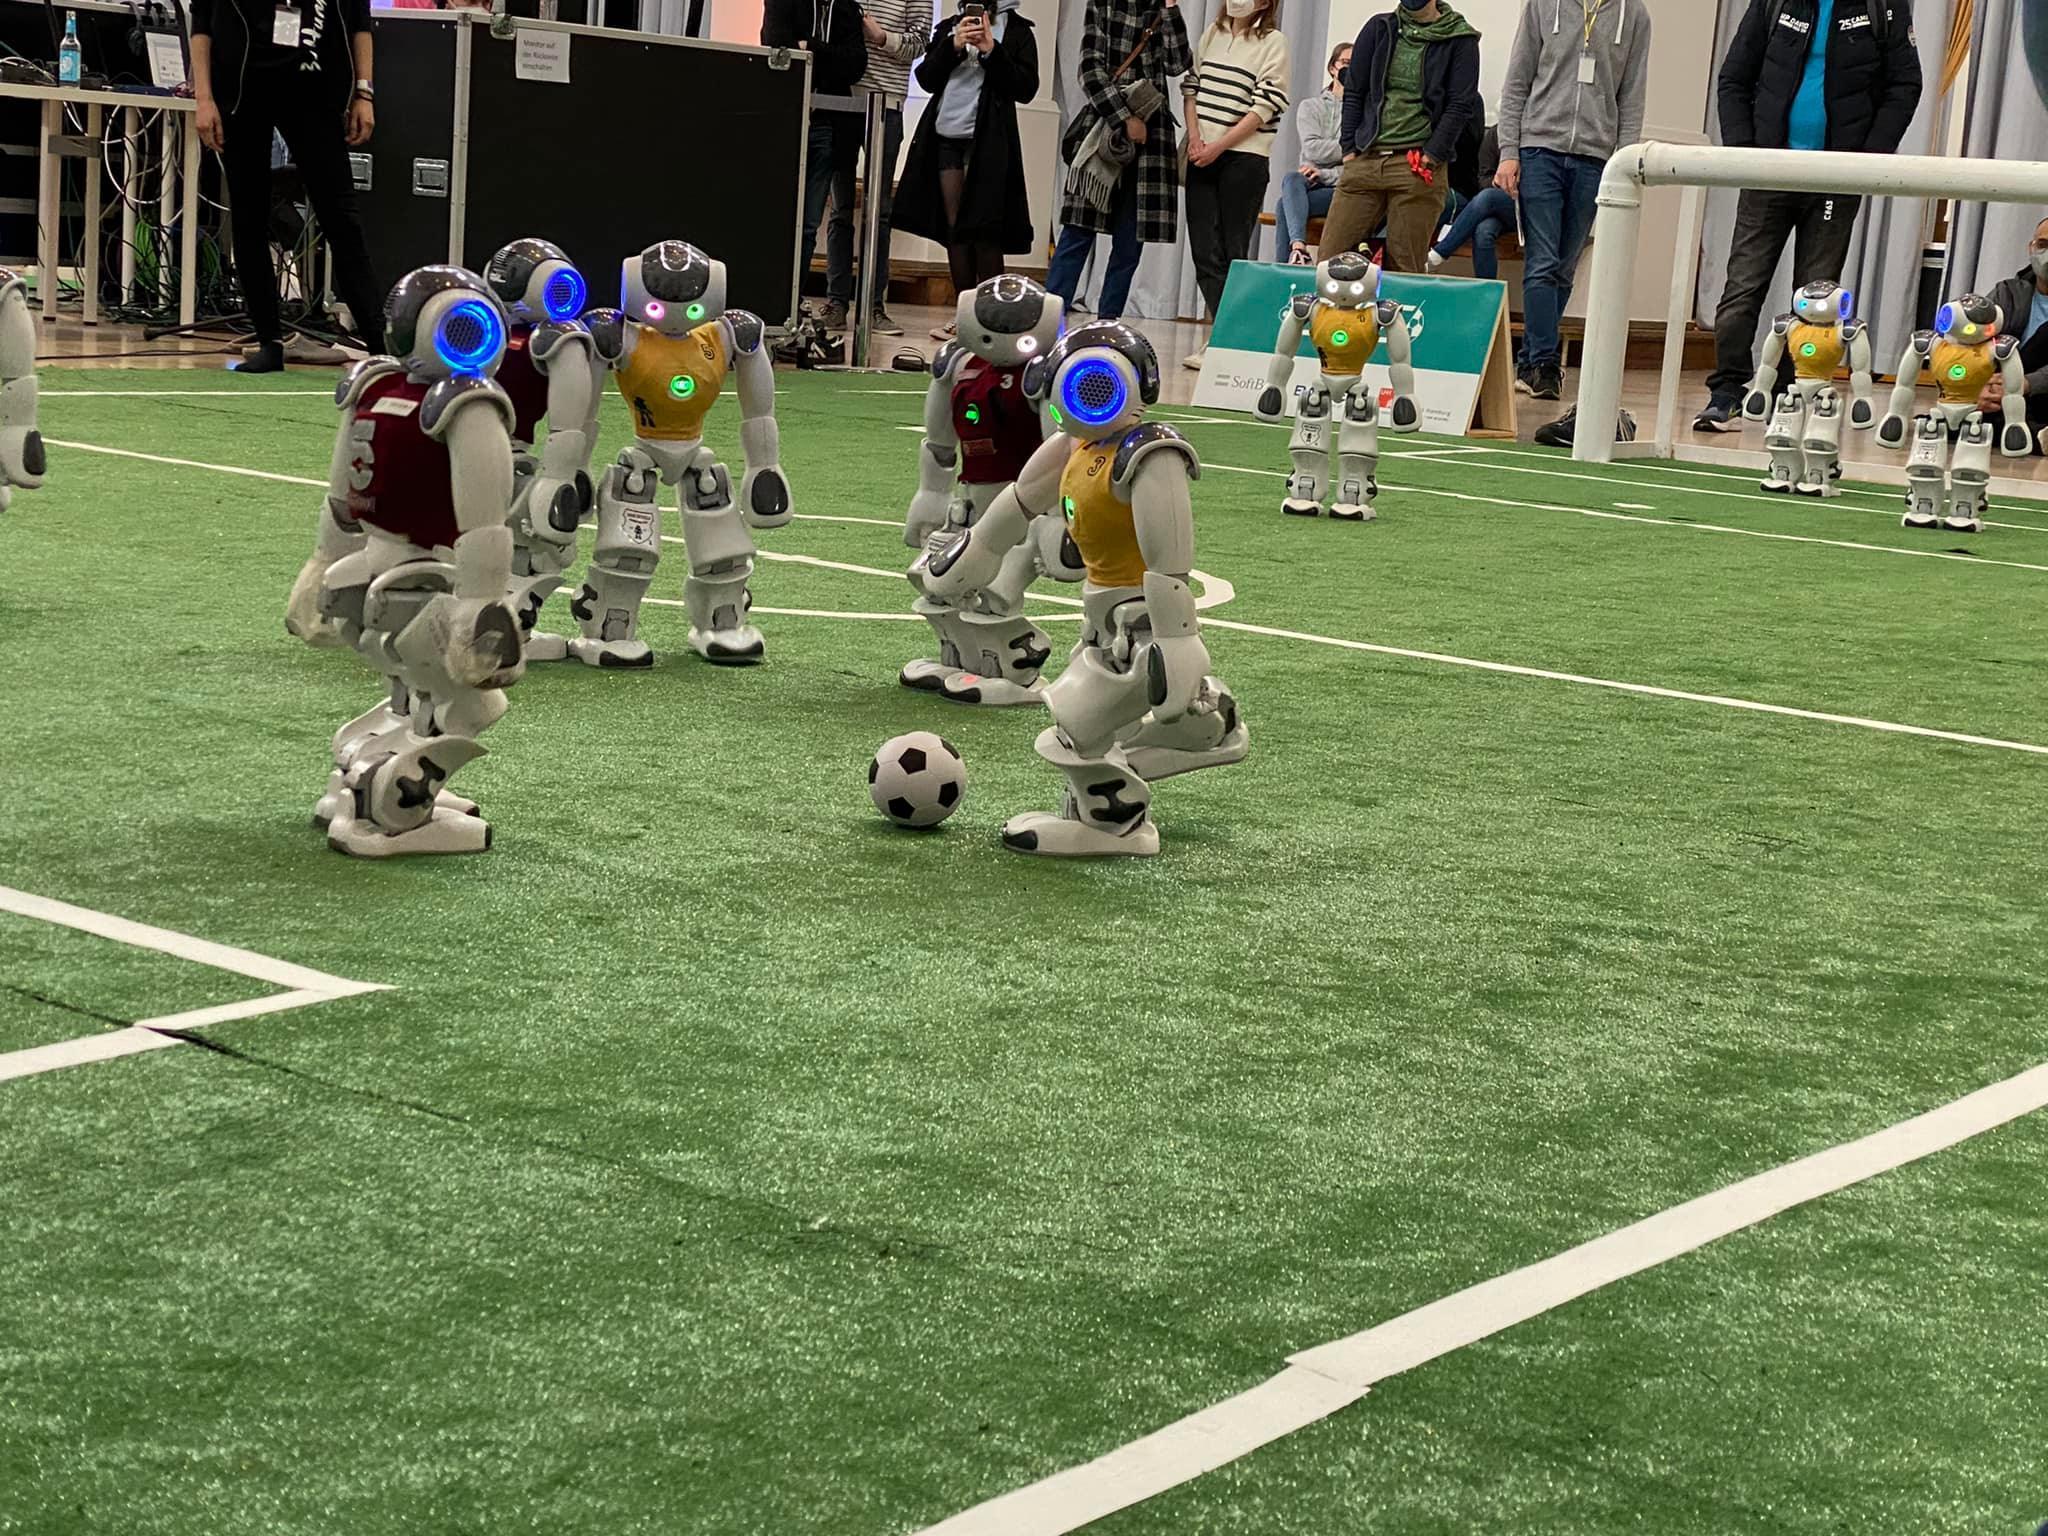 Soccer matches of the Robot Soccer Players of the RoboCup competition - Partite di Calcio dei Robot Calciatori della competizione RoboCup